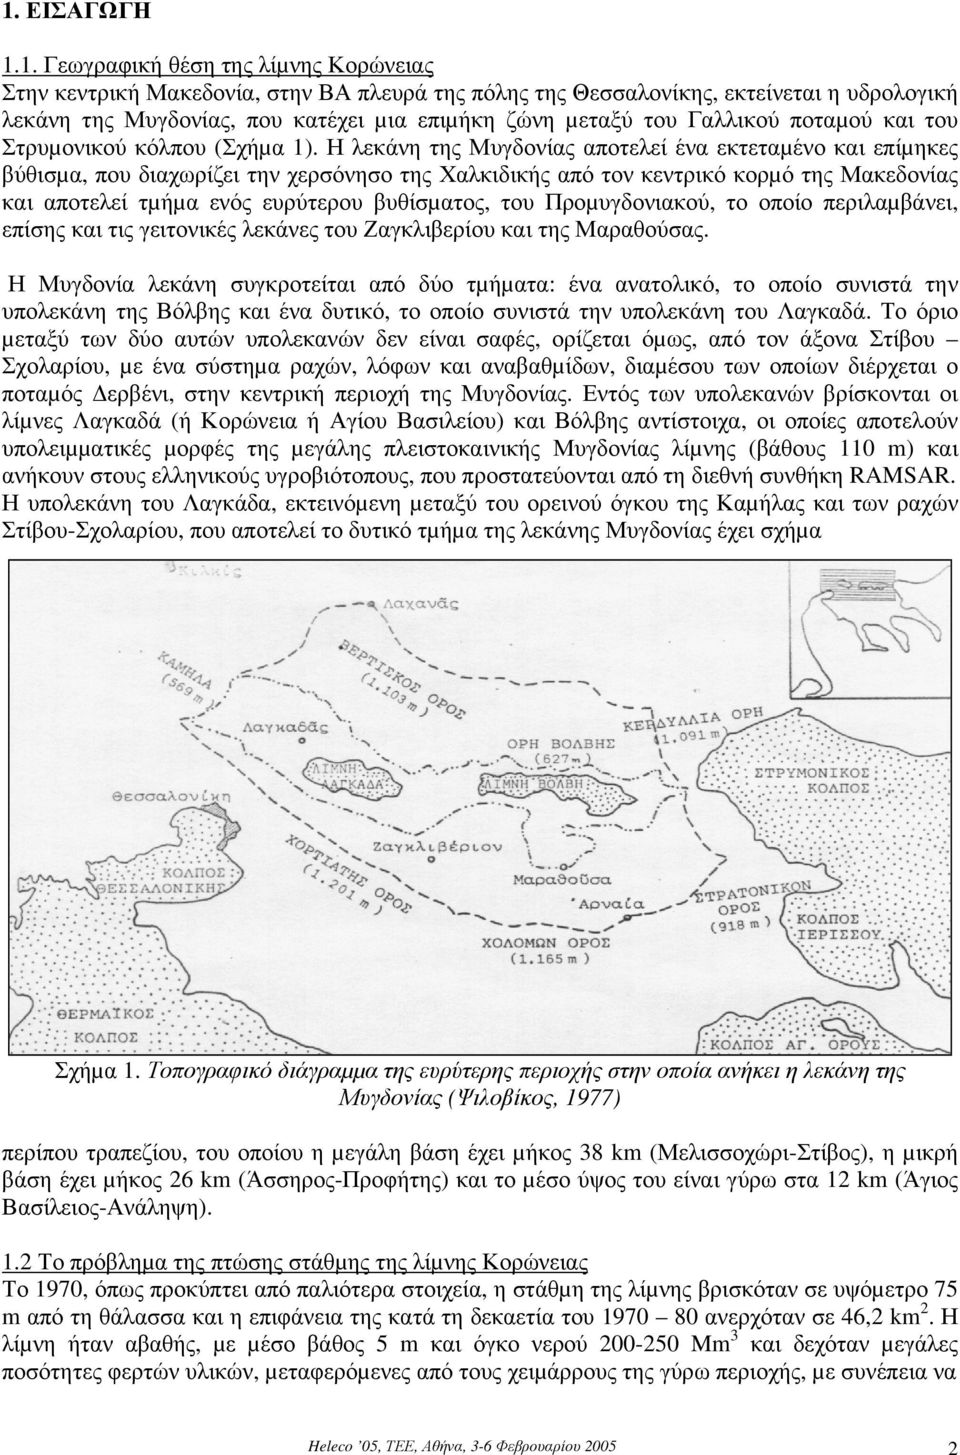 Η λεκάνη της Μυγδονίας αποτελεί ένα εκτεταµένο και επίµηκες βύθισµα, που διαχωρίζει την χερσόνησο της Χαλκιδικής από τον κεντρικό κορµό της Μακεδονίας και αποτελεί τµήµα ενός ευρύτερου βυθίσµατος,